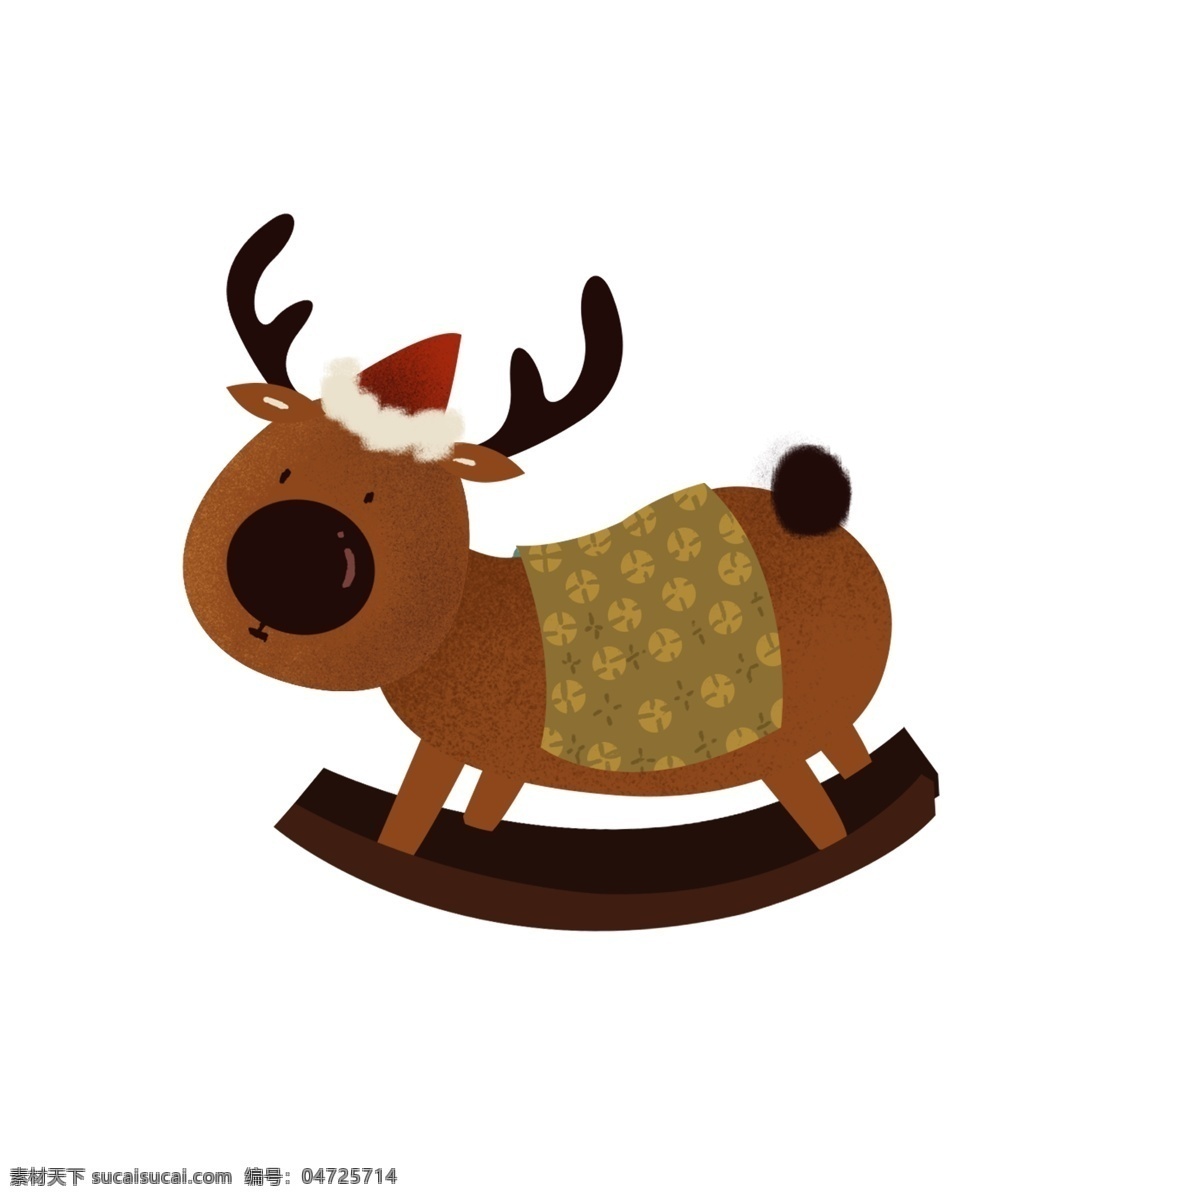 卡通 复古 驯鹿 插画 创意 圣诞节 节日元素 圣诞帽子